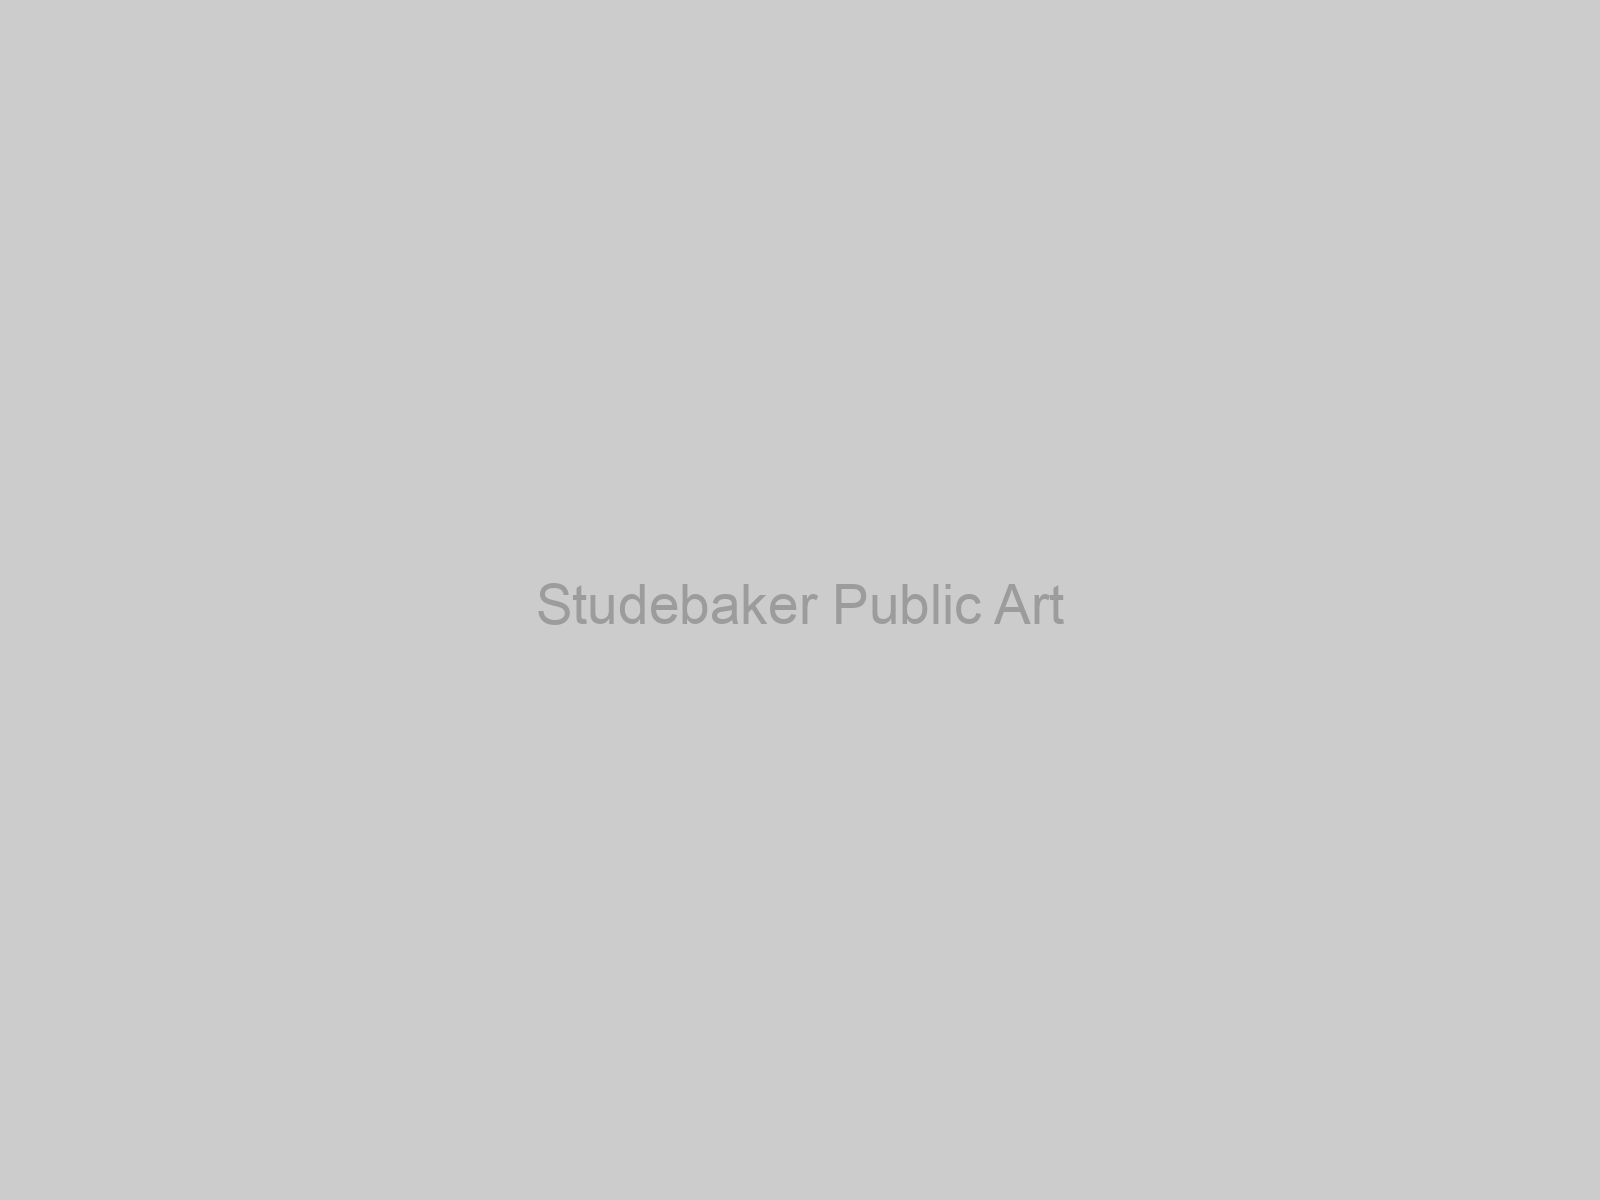 Studebaker Public Art